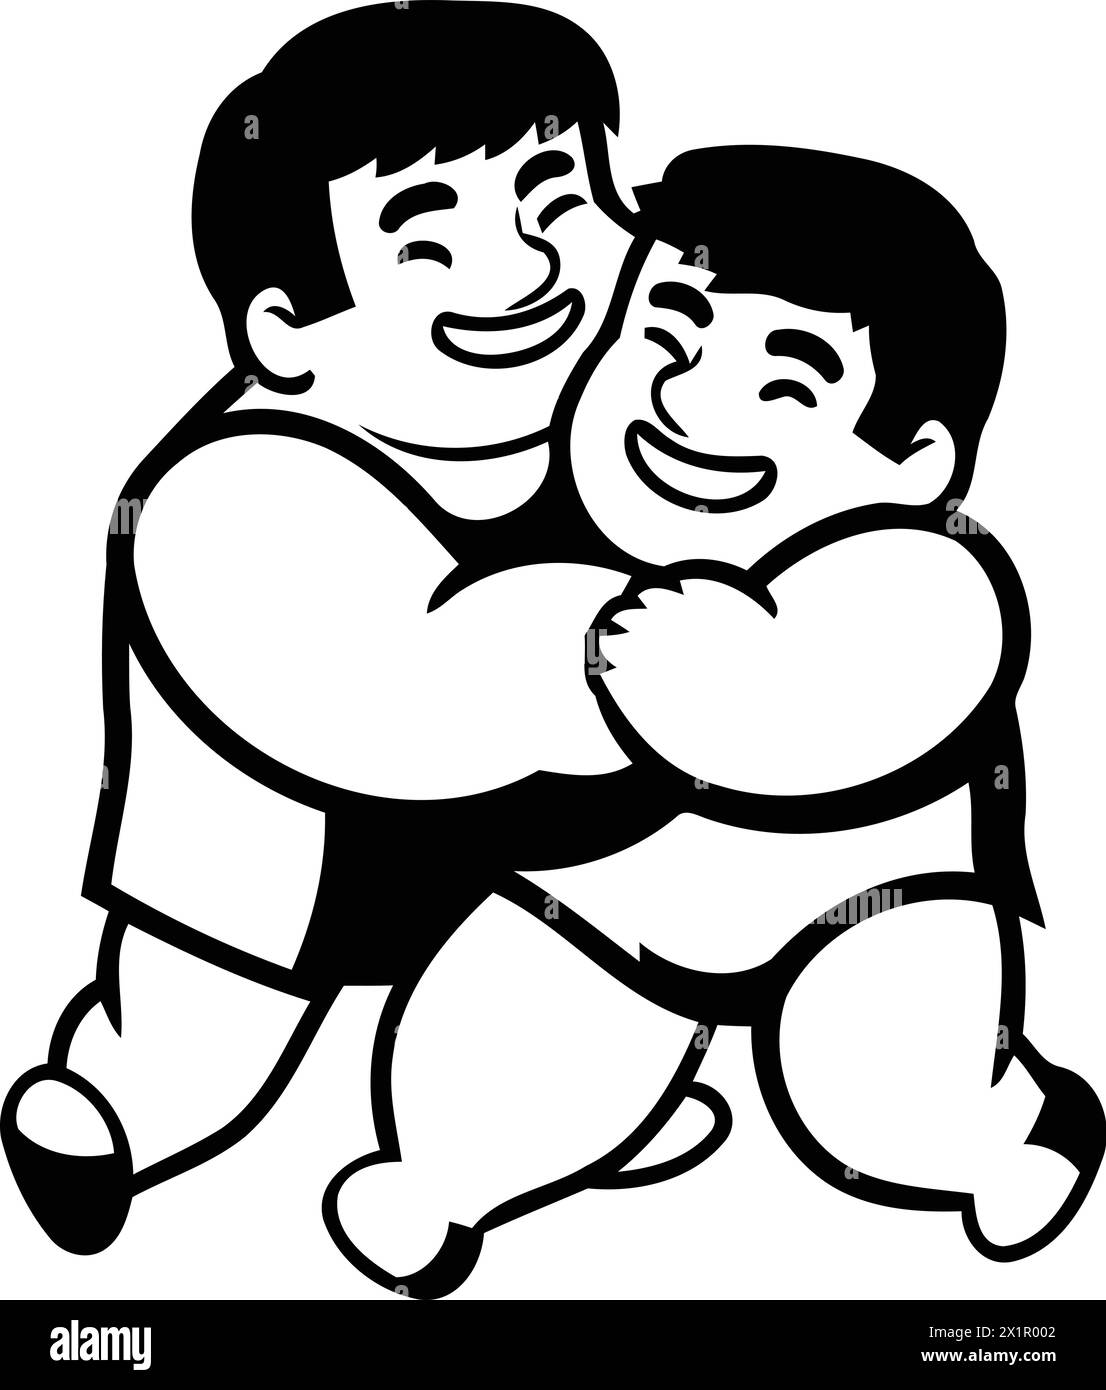 Vektor-Illustration eines Jungen und eines Jungen in Shorts, die sich umarmen Stock Vektor